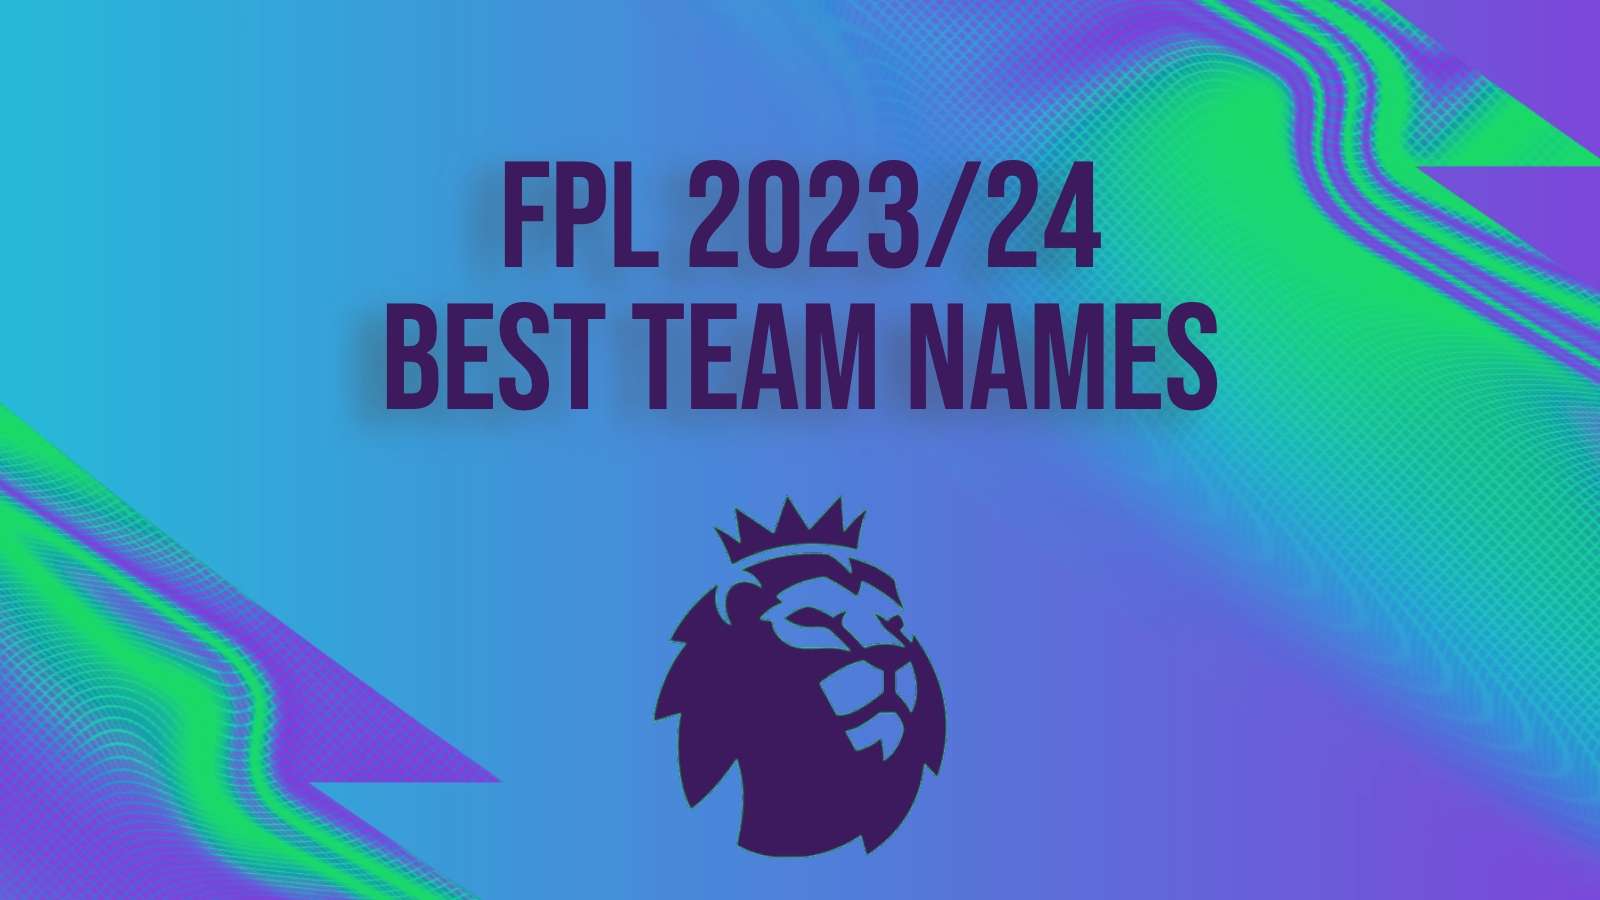 Fantasy premier league best team names